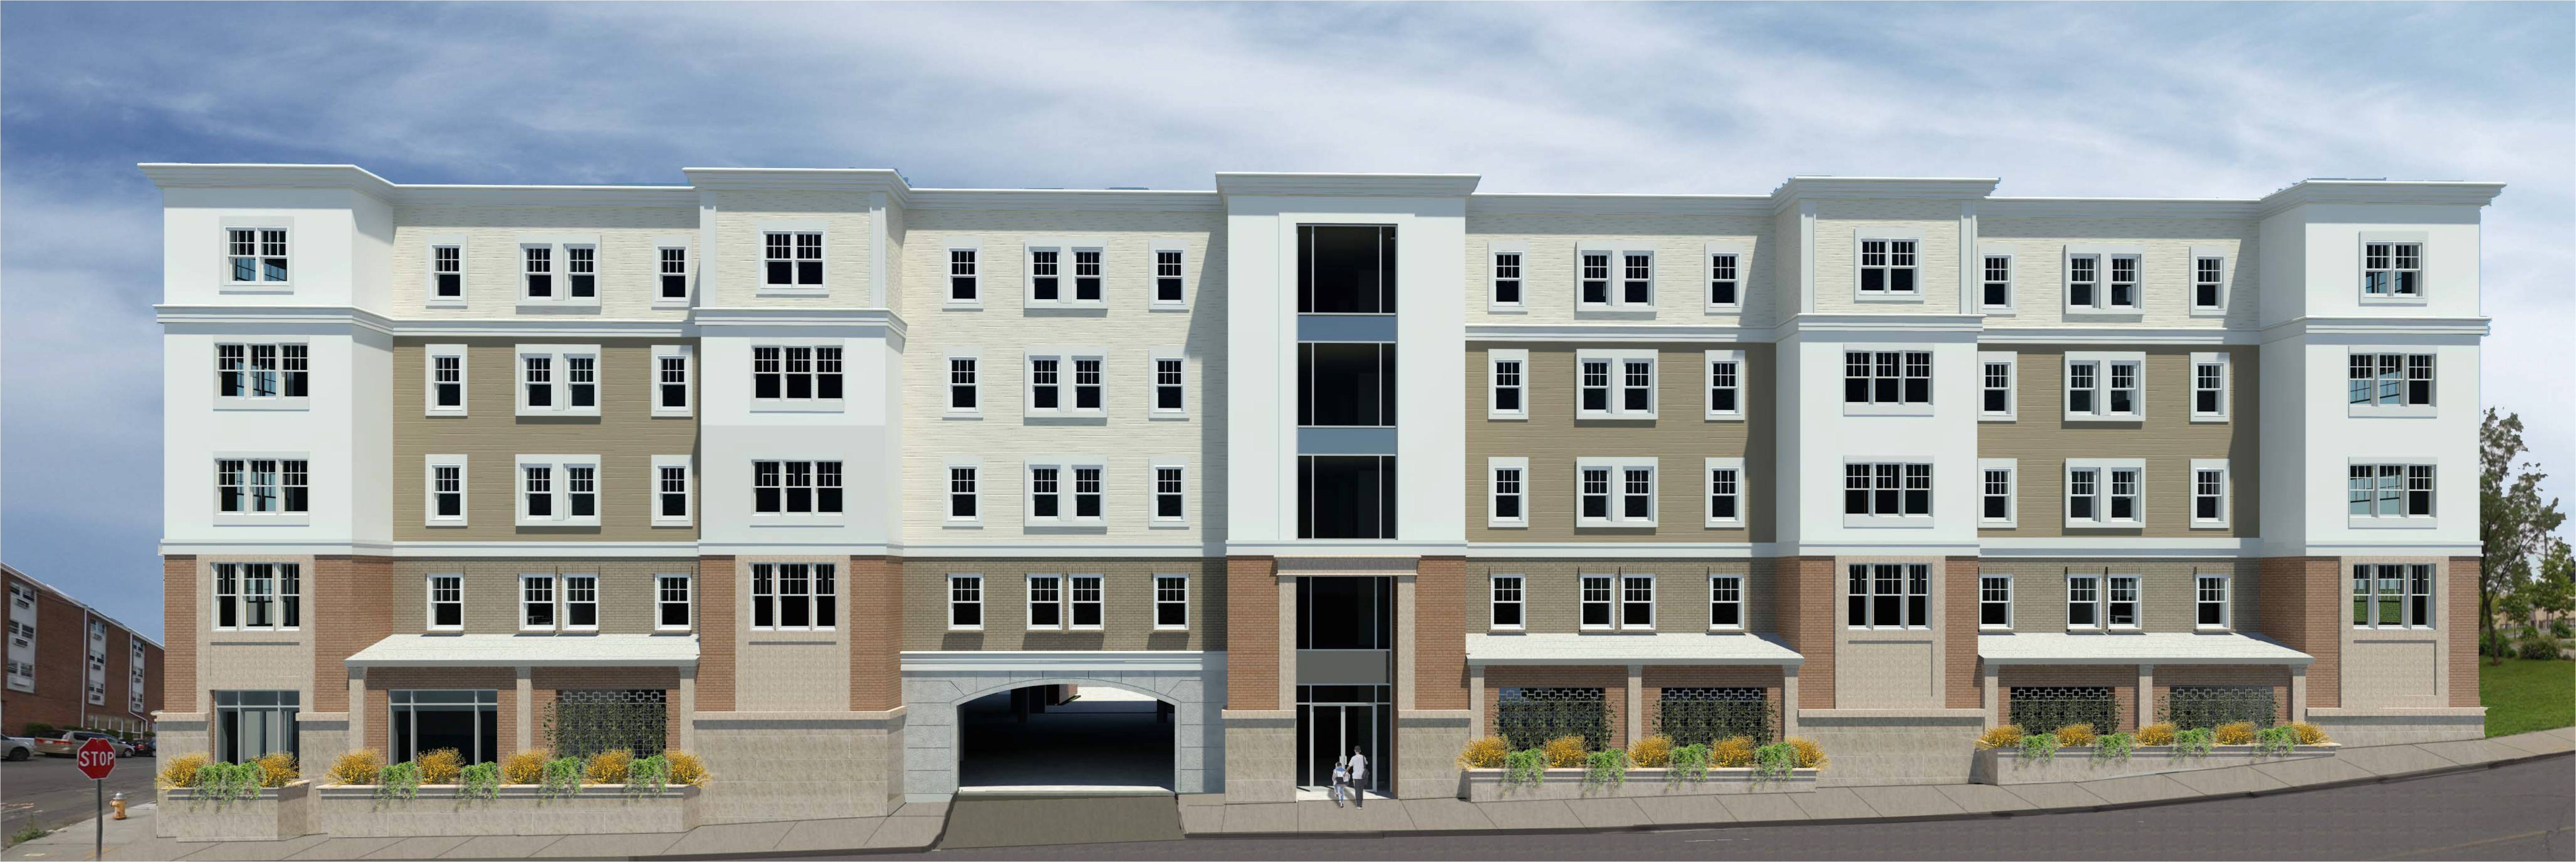 Cheap 1 Bedroom Apartments In Bridgeport Ct Bridgeport S Largest 2016 Development Groundbreaking In An Emerging